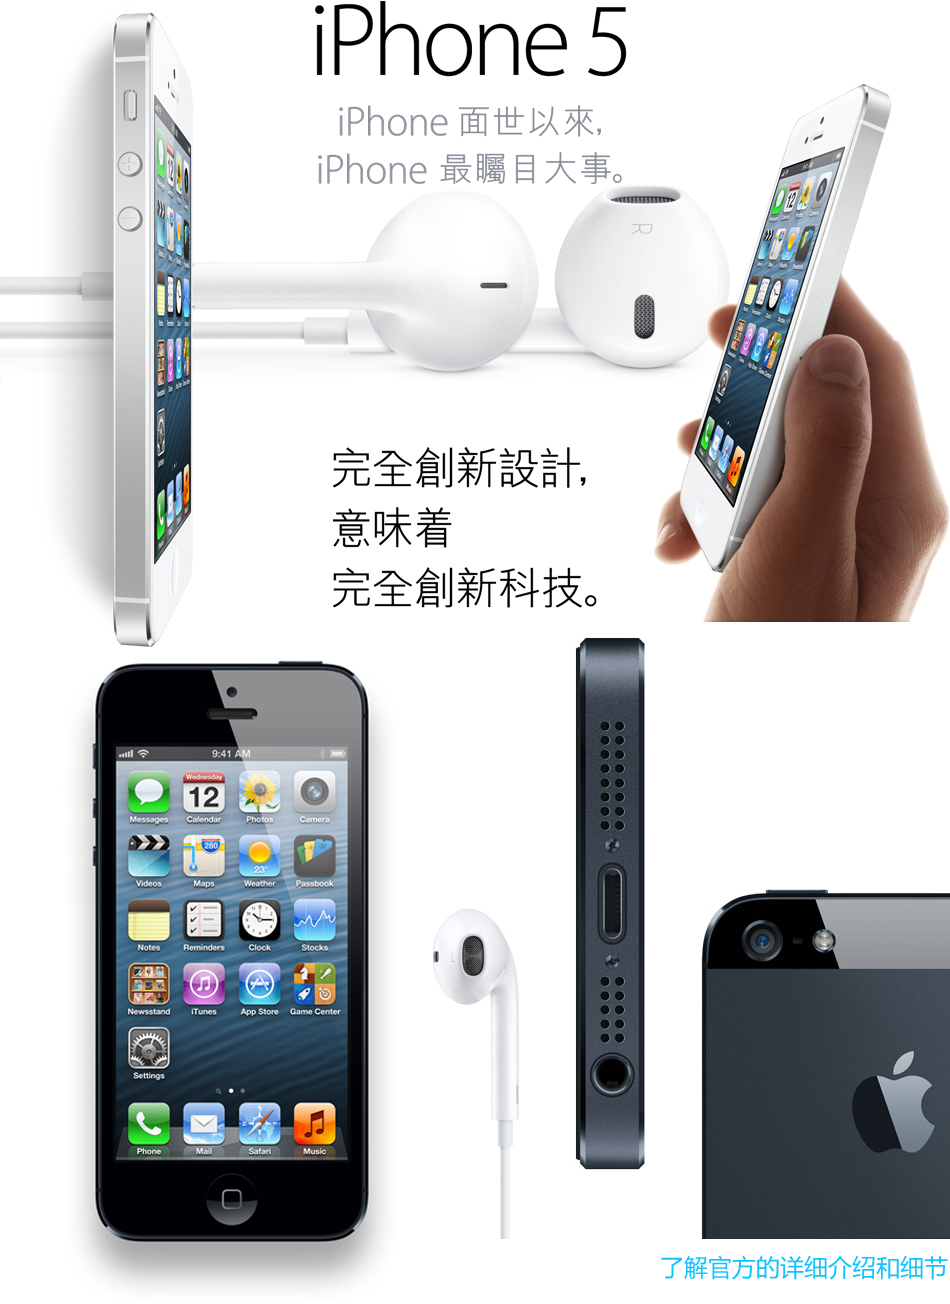 郑州苹果专卖移动联通电信万能版_鸿泰科技(你